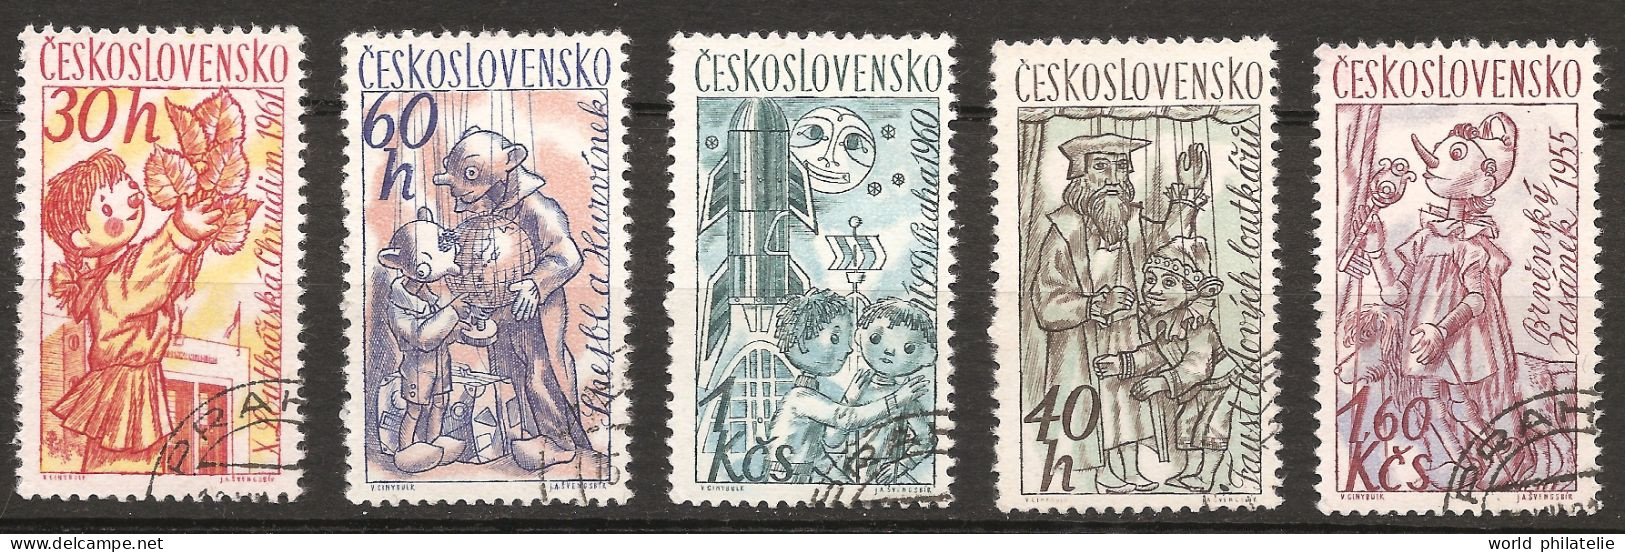 Tchécoslovaquie 1961 N° 1156 / 60 O Marionettes, Théâtre, Guignol, Pinocchio, Faust Et Gaspard, Lune, Fusée Jasanek Brno - Used Stamps